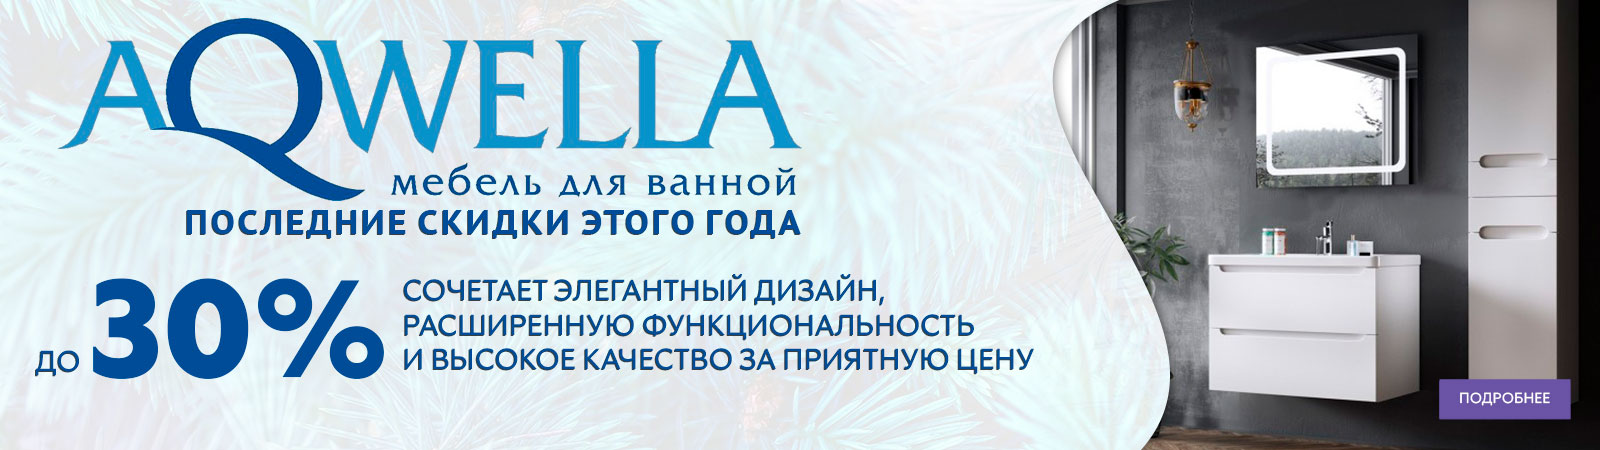 AQWELLA - Новогодняя Акция в период с 01.12 - 31.01.